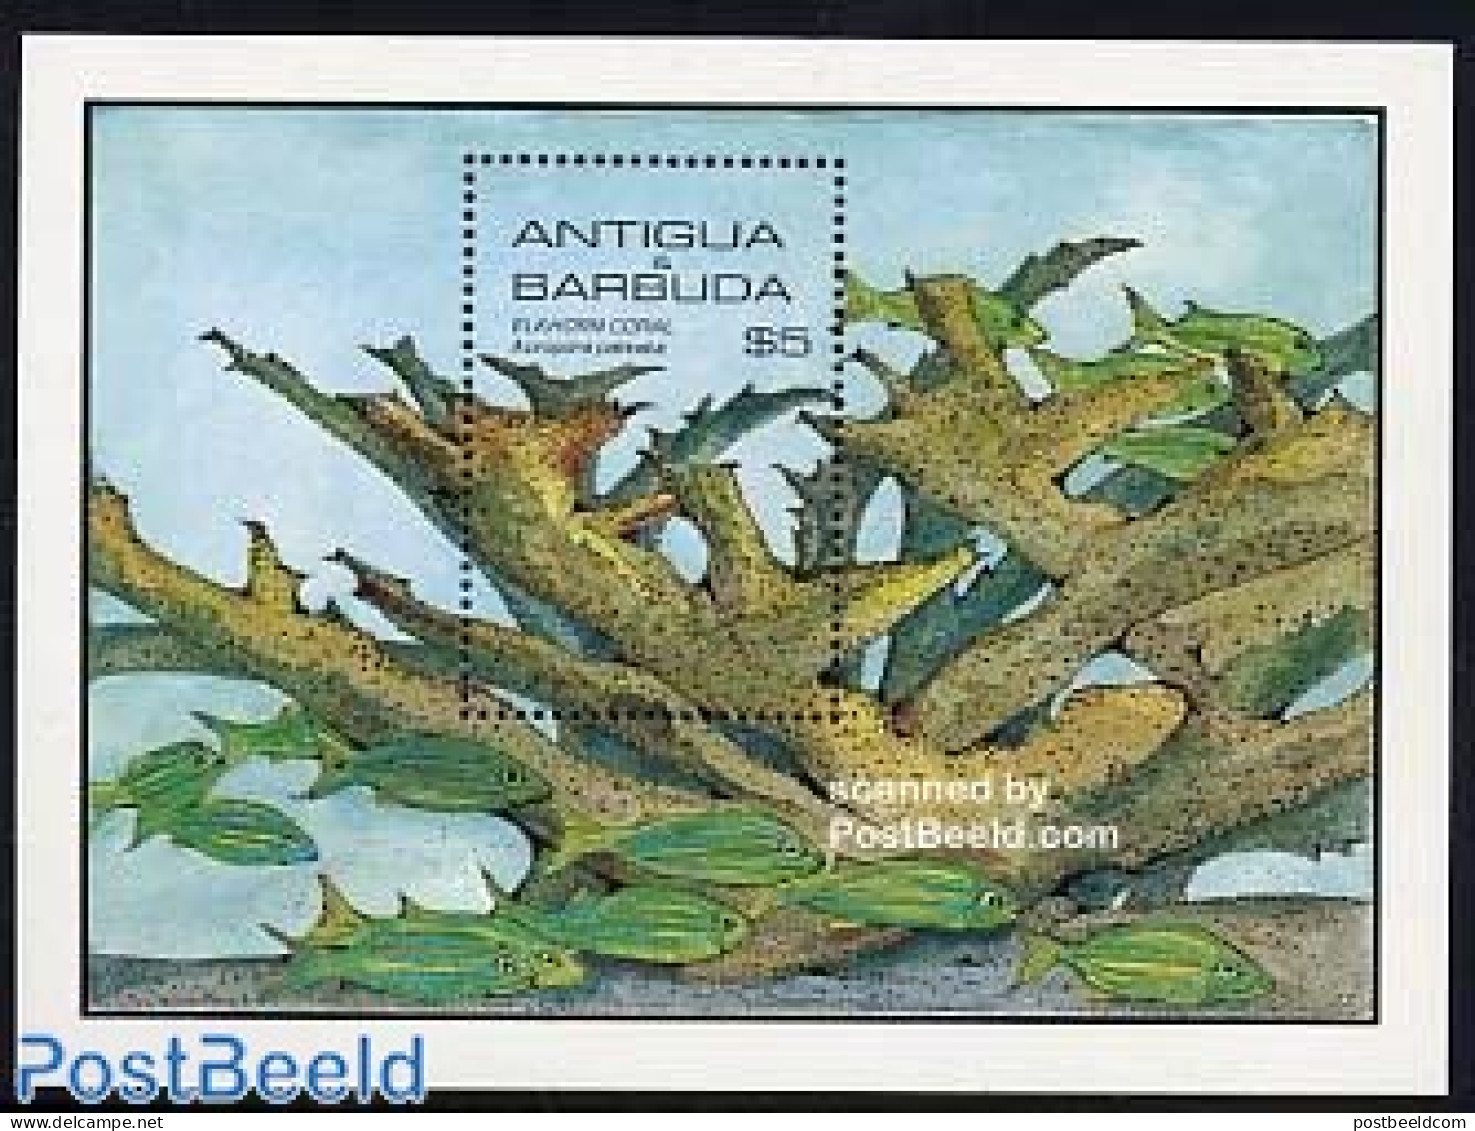 Antigua & Barbuda 1985 Corals S/s, Mint NH, Nature - Shells & Crustaceans - Mundo Aquatico